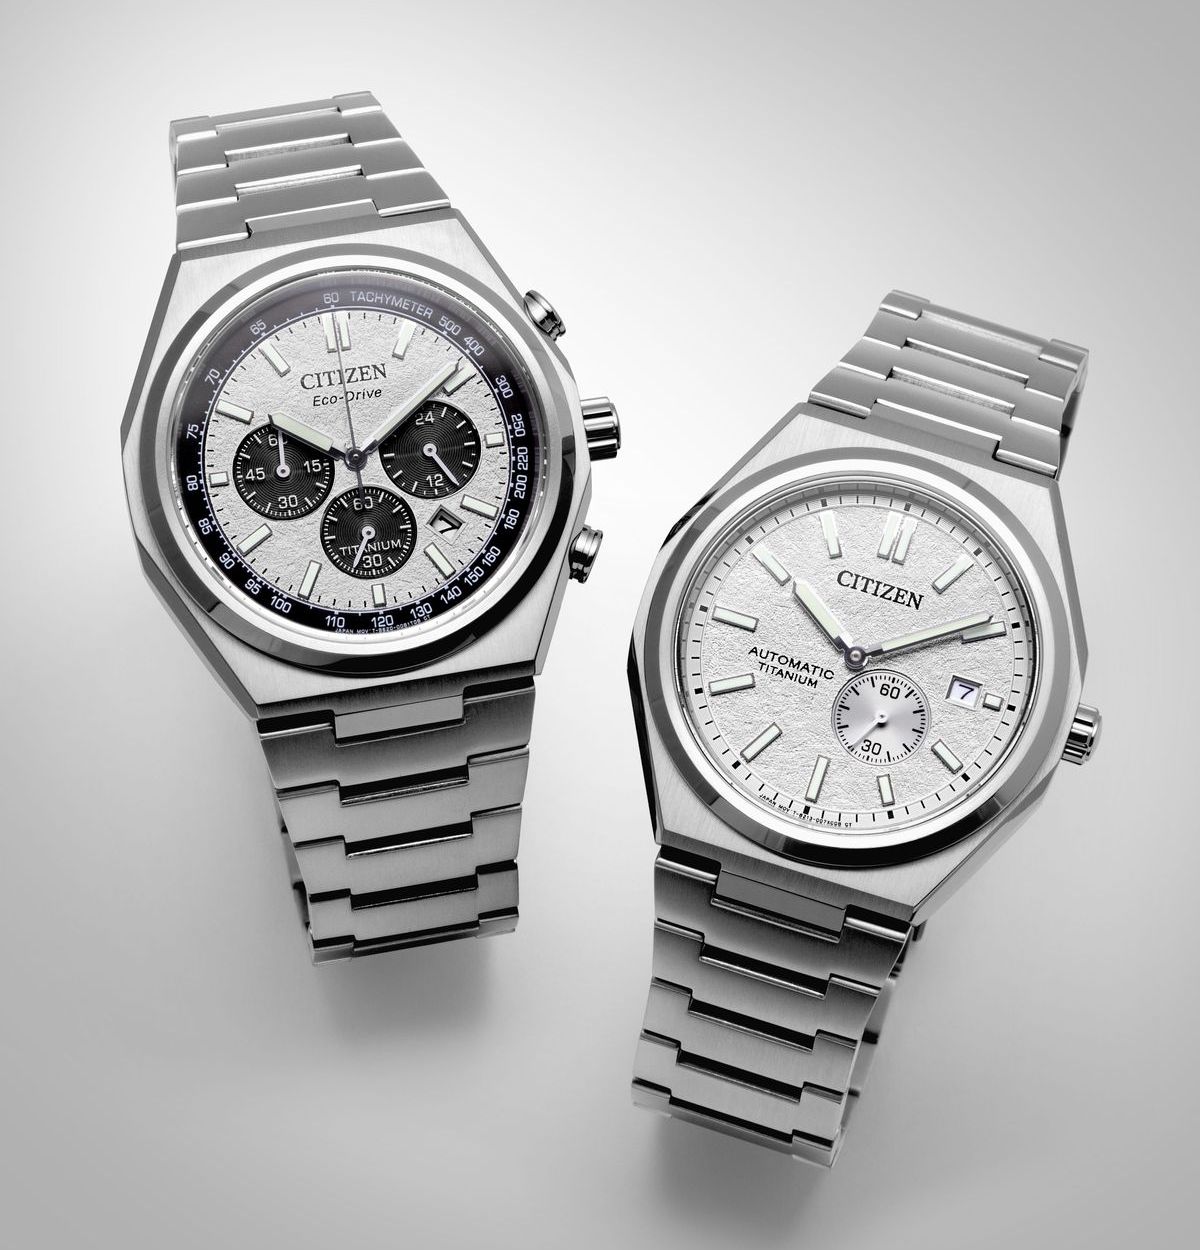 Foto: Citizen bringt neue Super-Titanium-Uhrenkollektion.